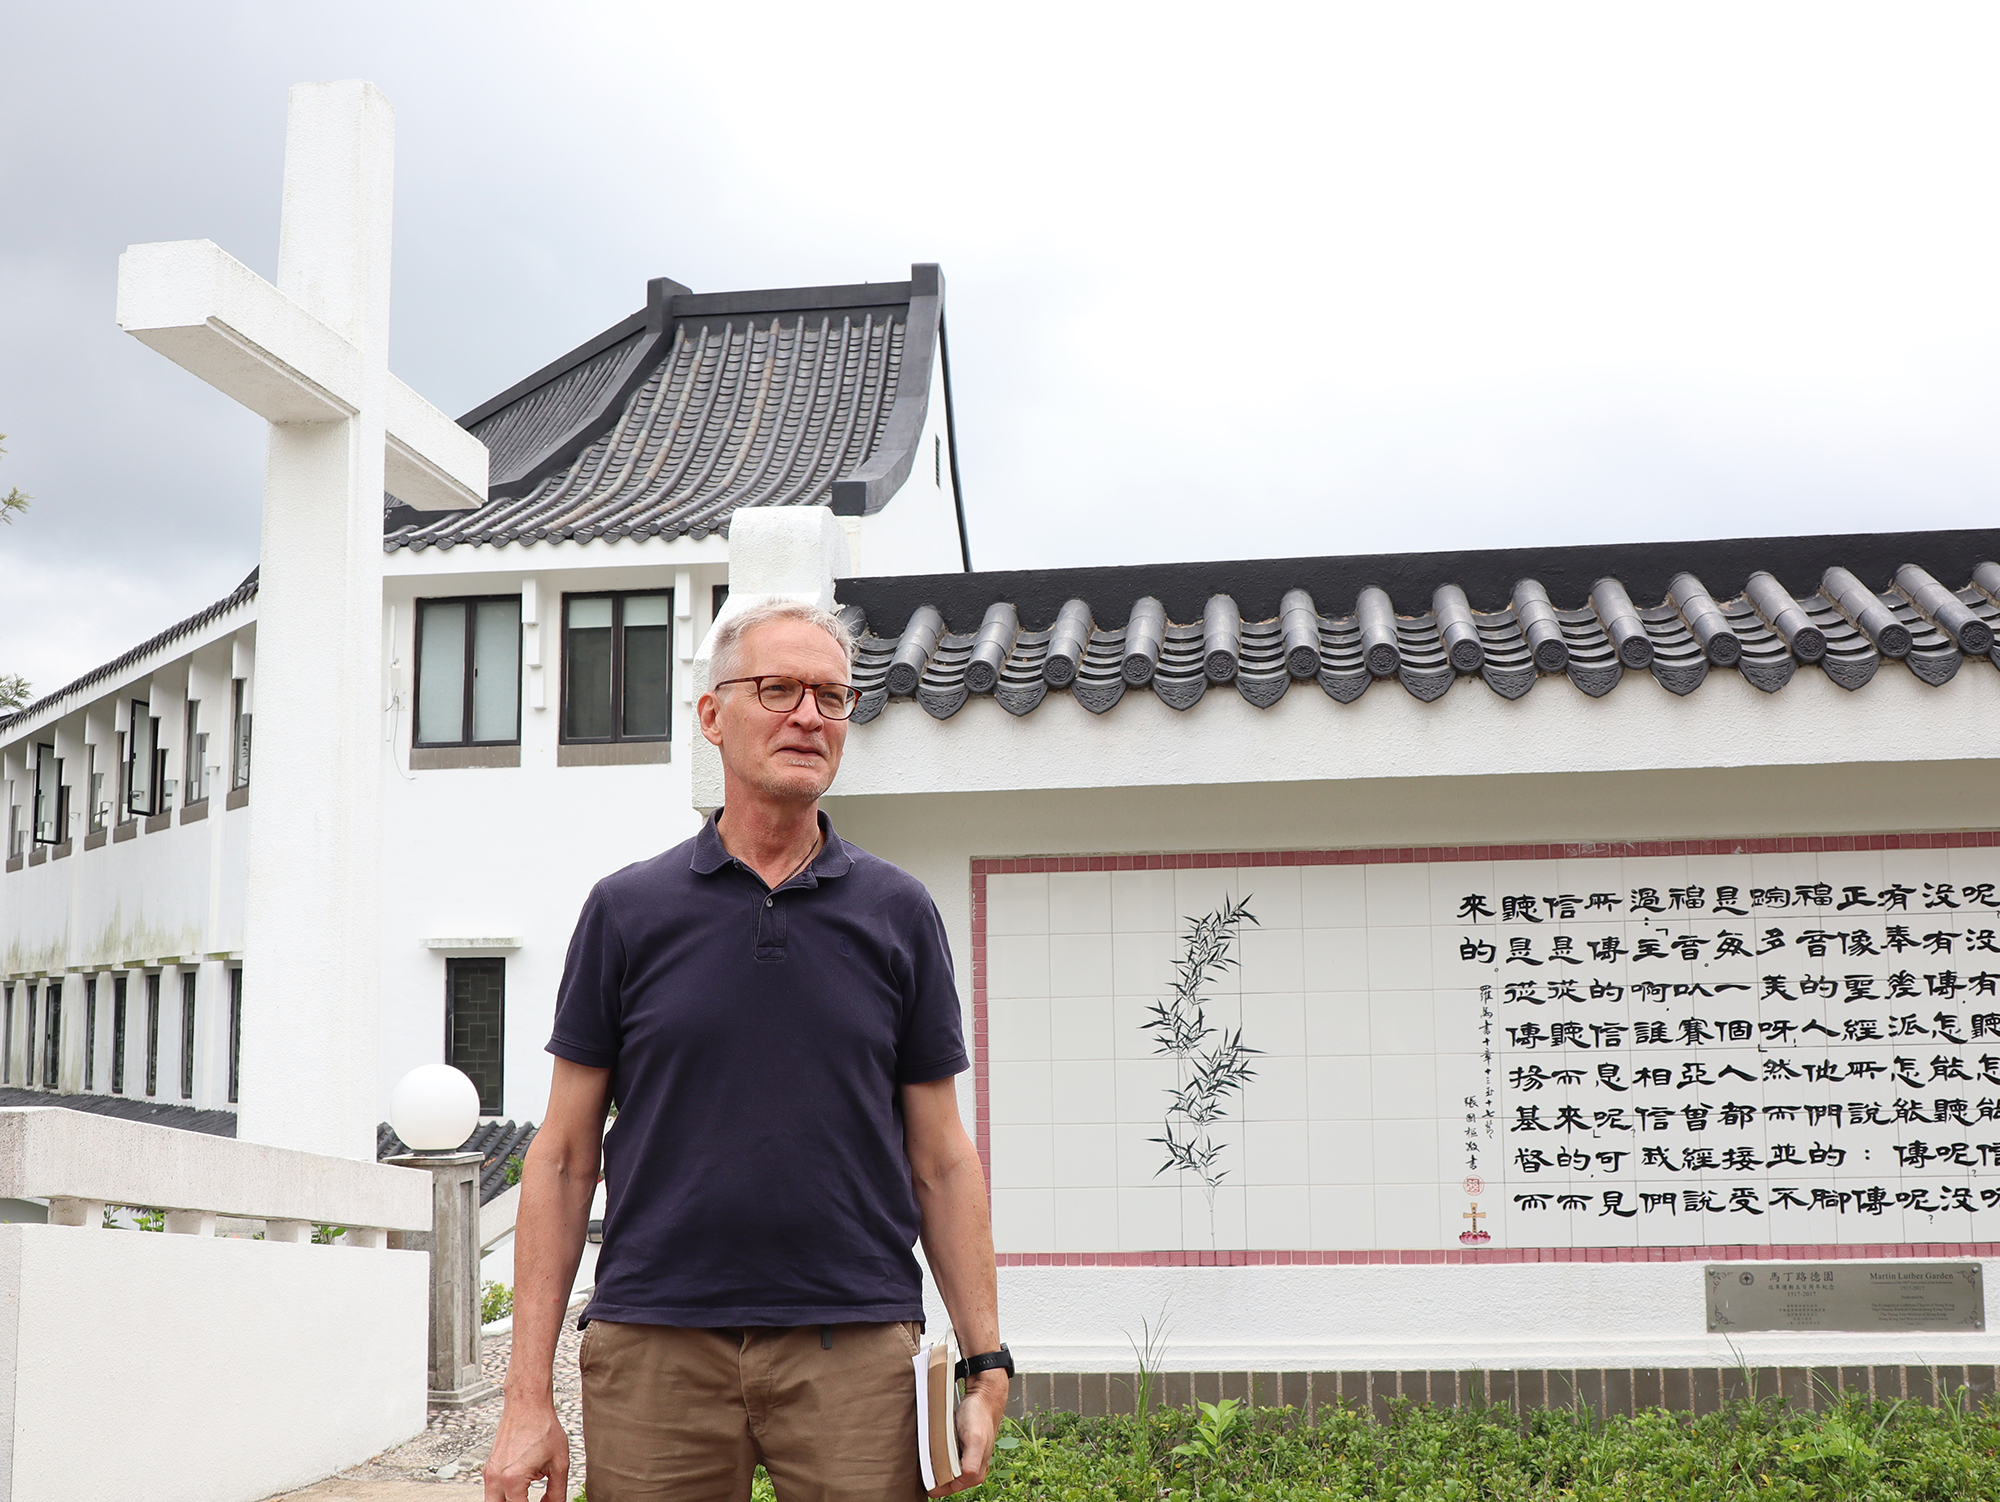 Jukka Helle seisoo seminaarin pihalla kädessään kirjapino. Taustalla näkyy iso risti ja valkoinen kiinalaisin kirjaimin kaiverrettu kivitaulu.